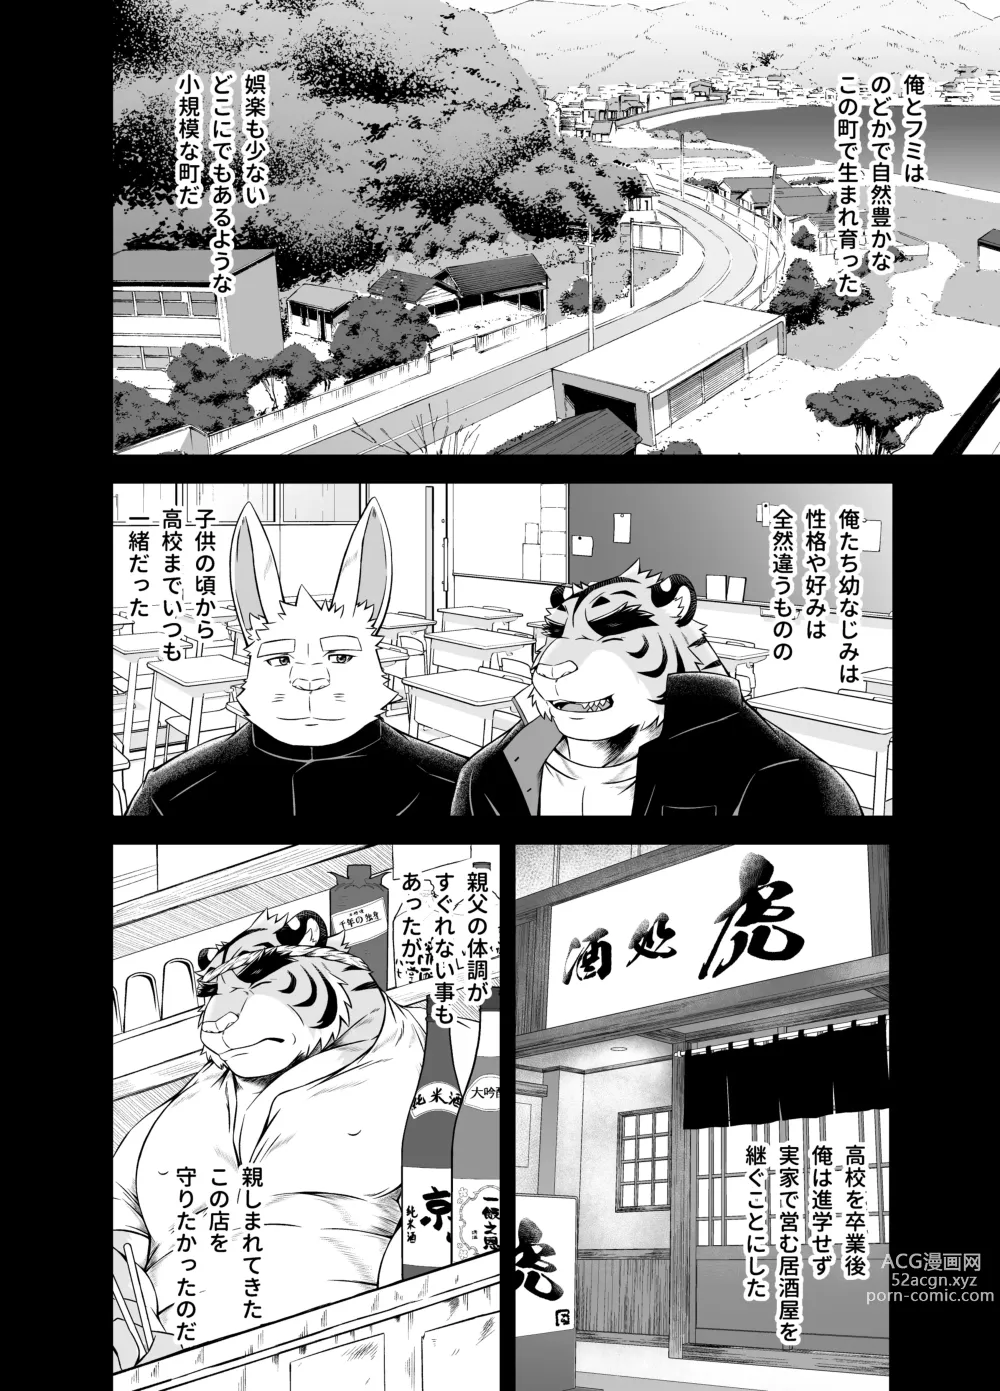 Page 6 of doujinshi Saigo No Matsuri Hayashi